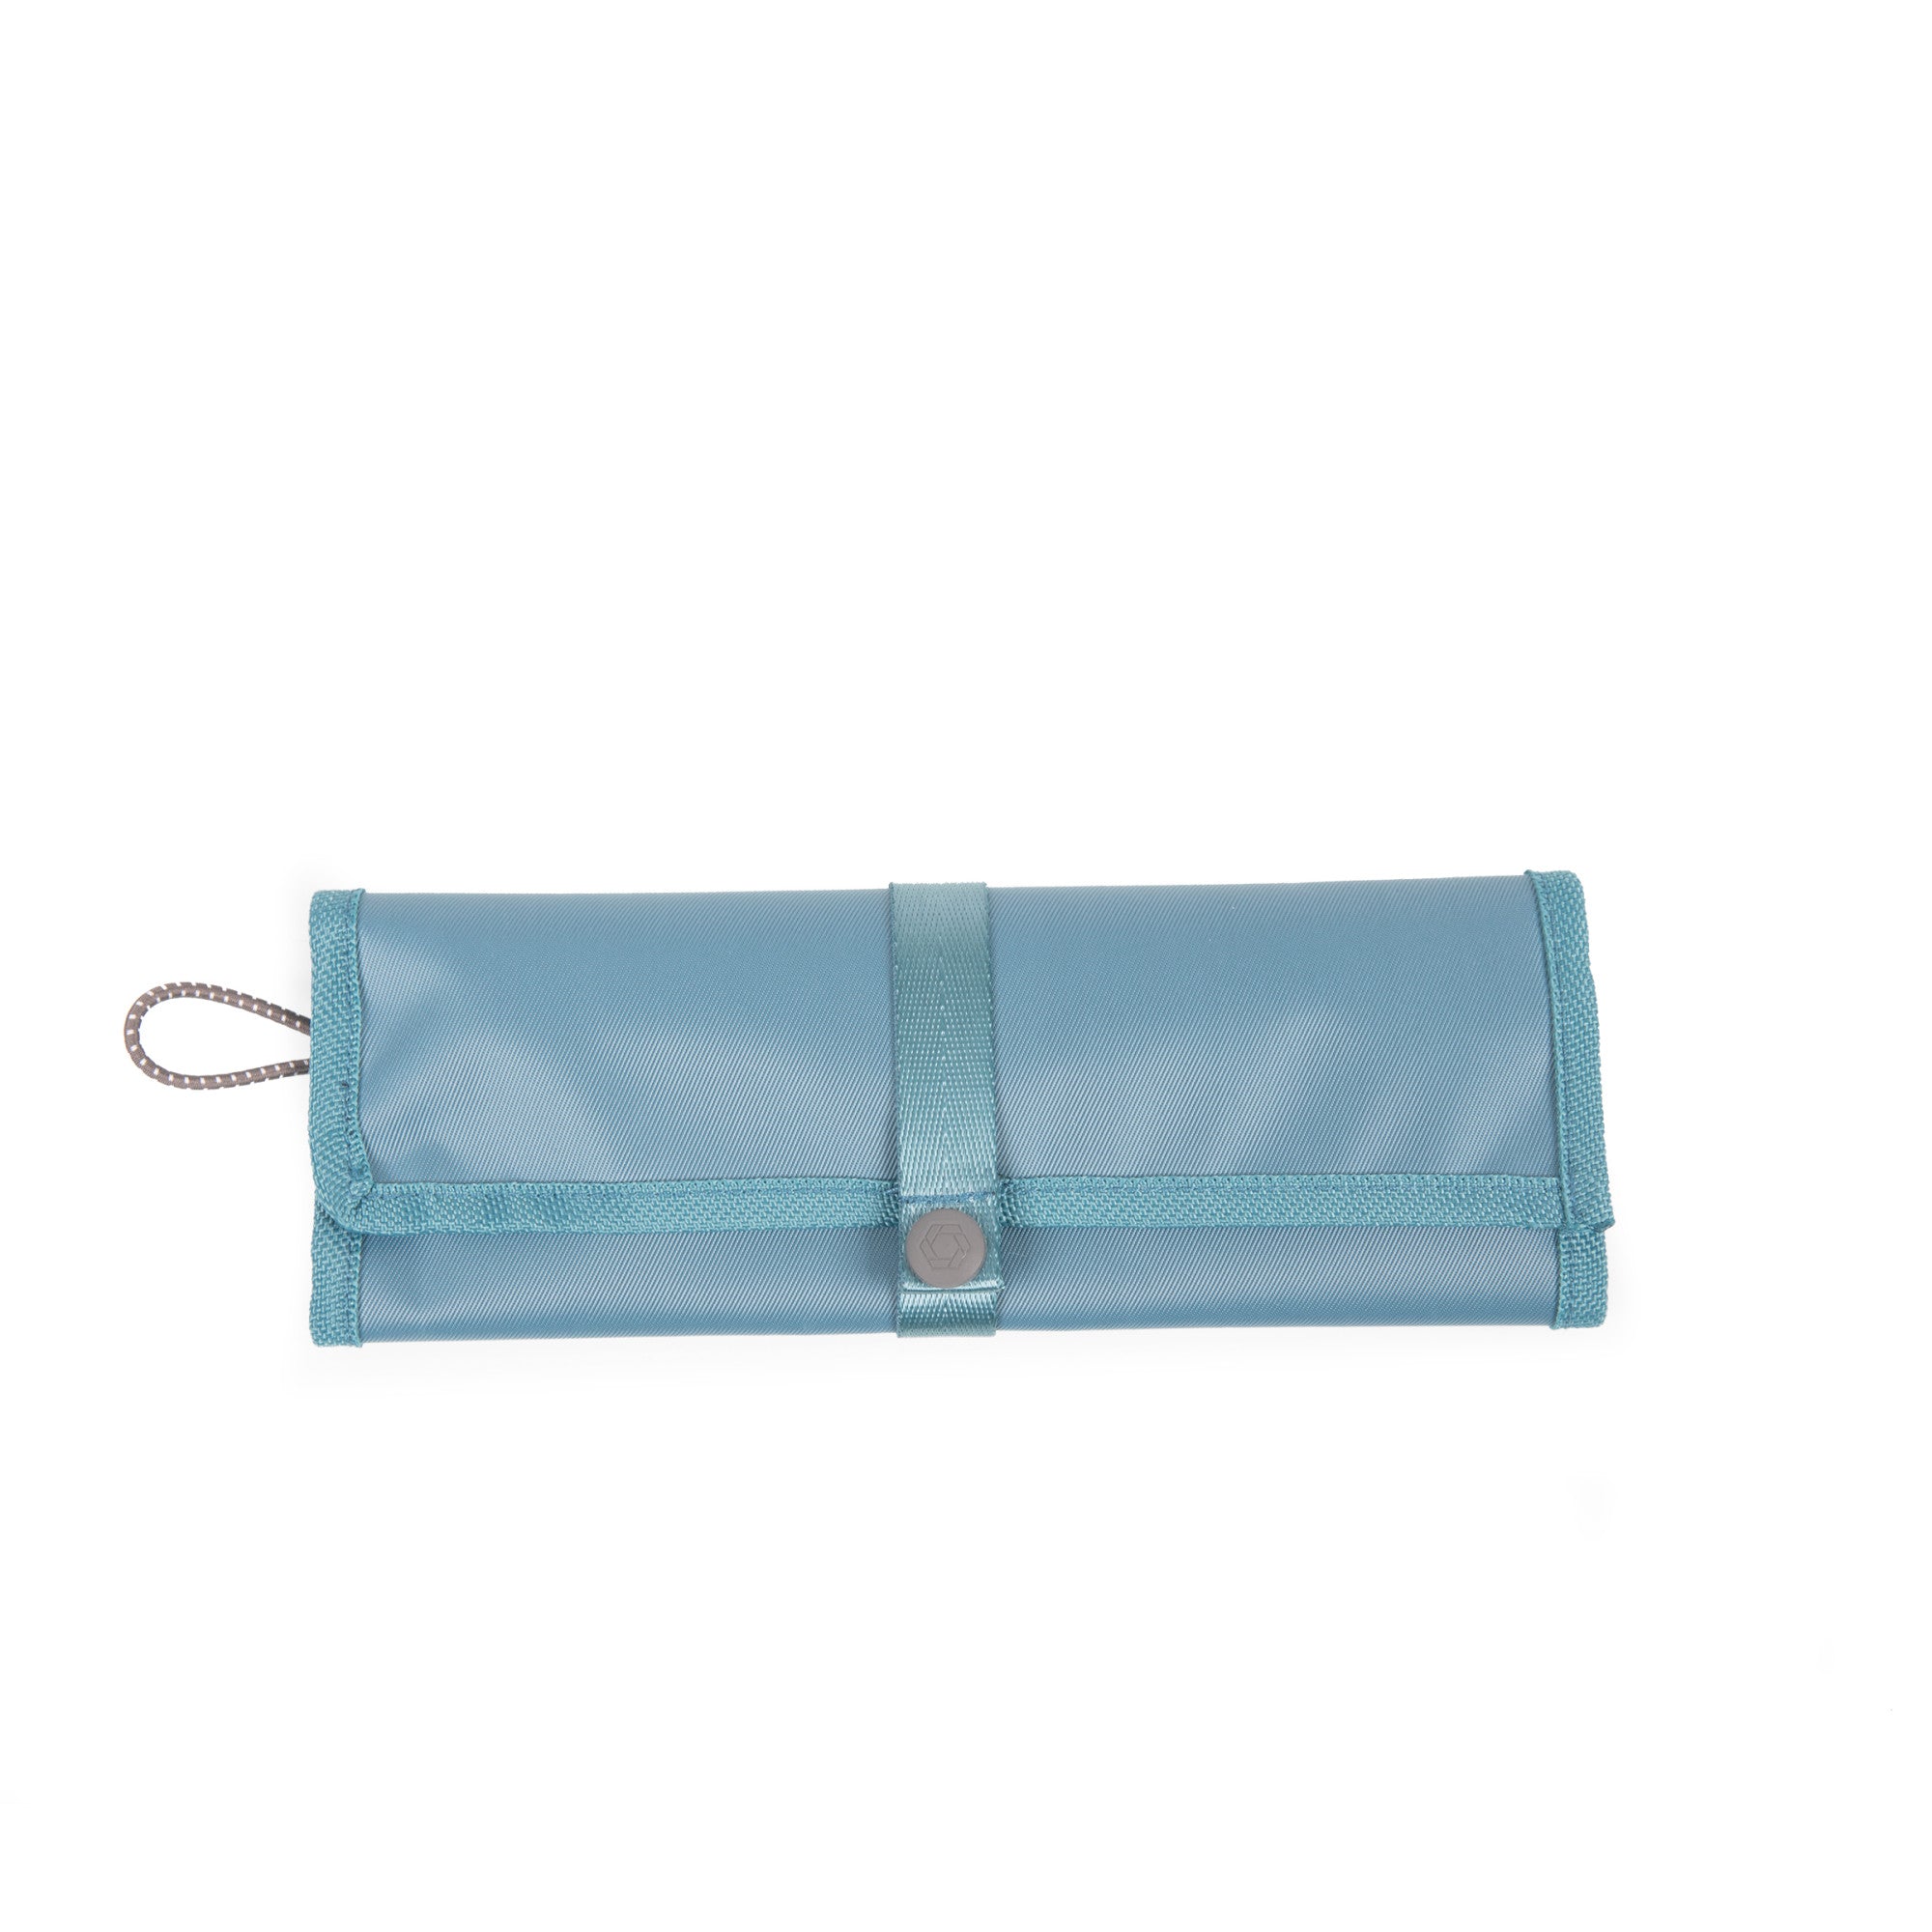 Tarana Insulated Lunch Bag